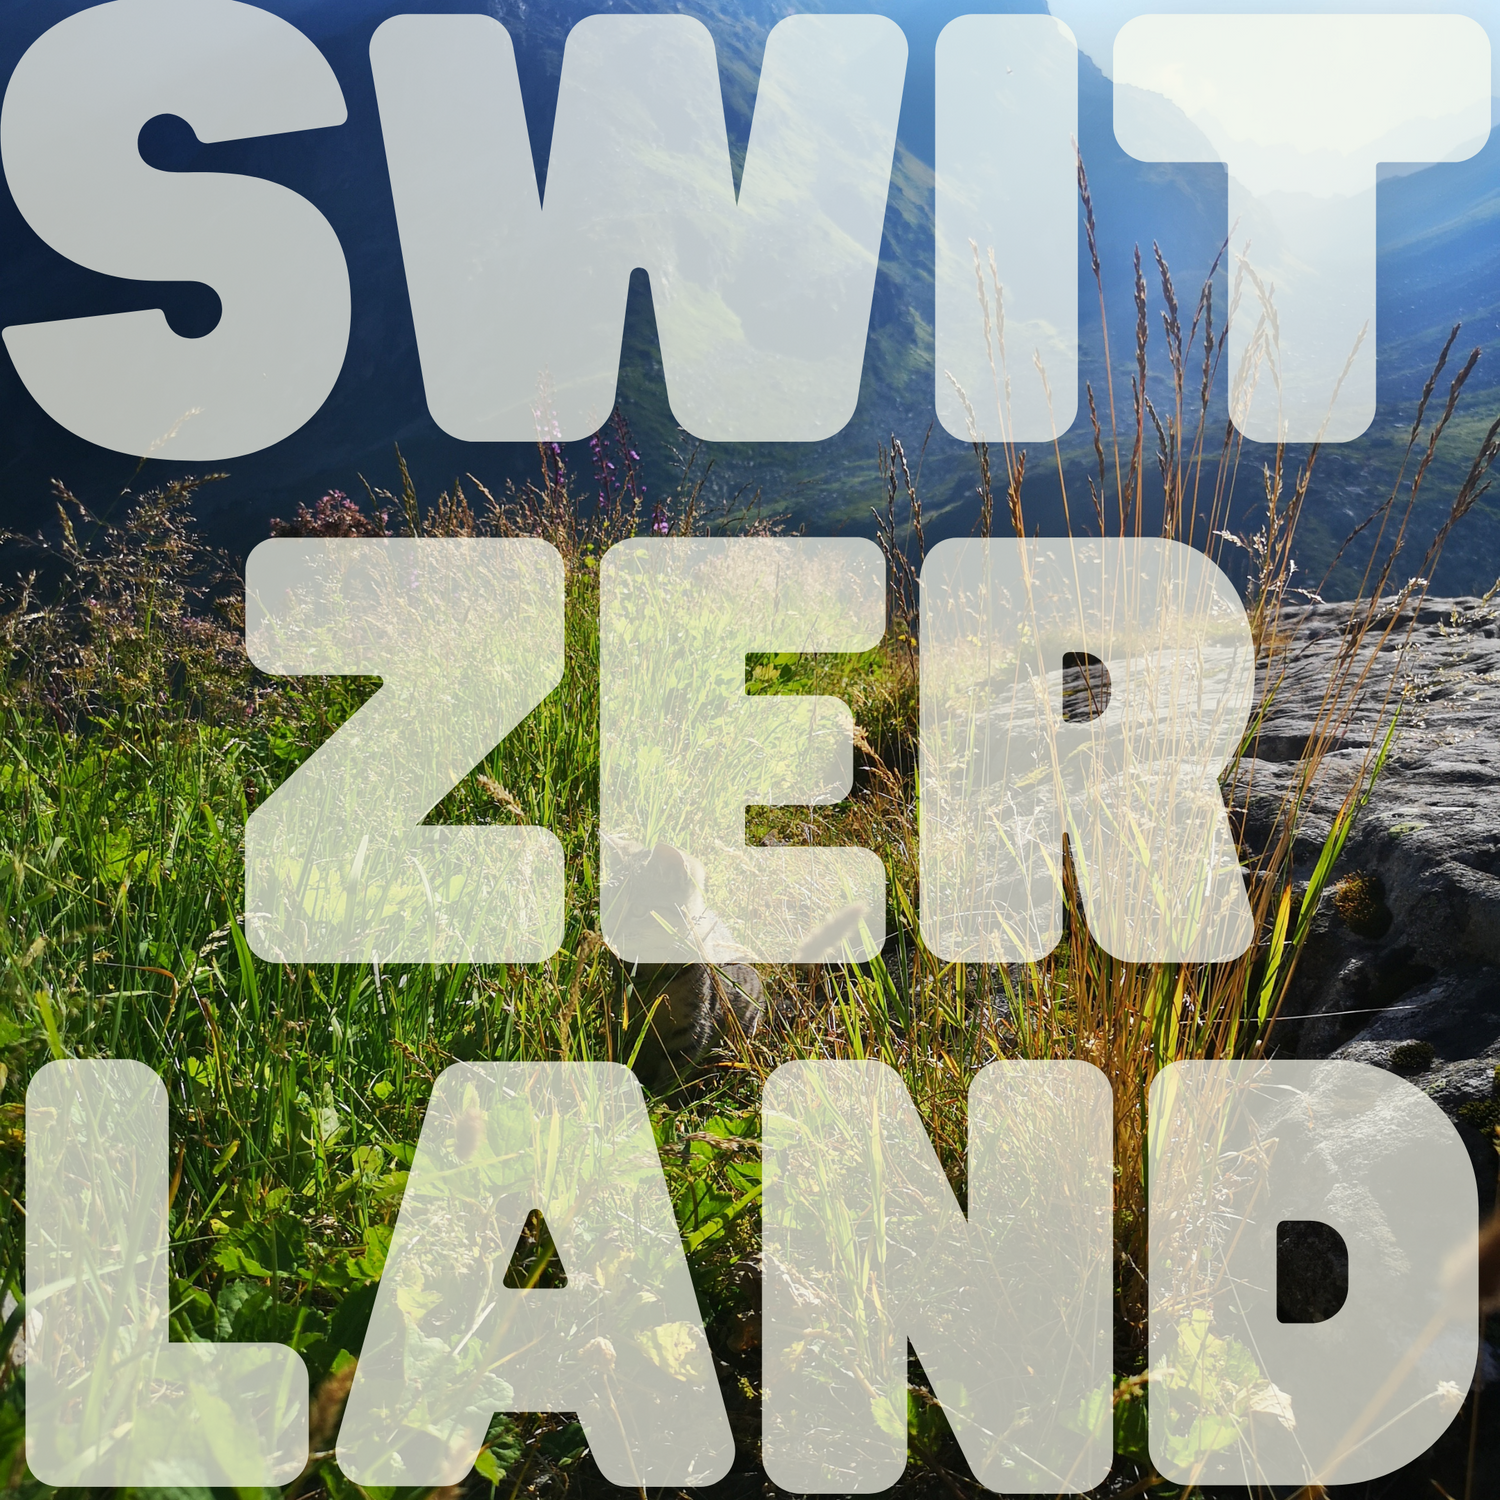 SWITZERLAND Hiking Guide w/@scanniich